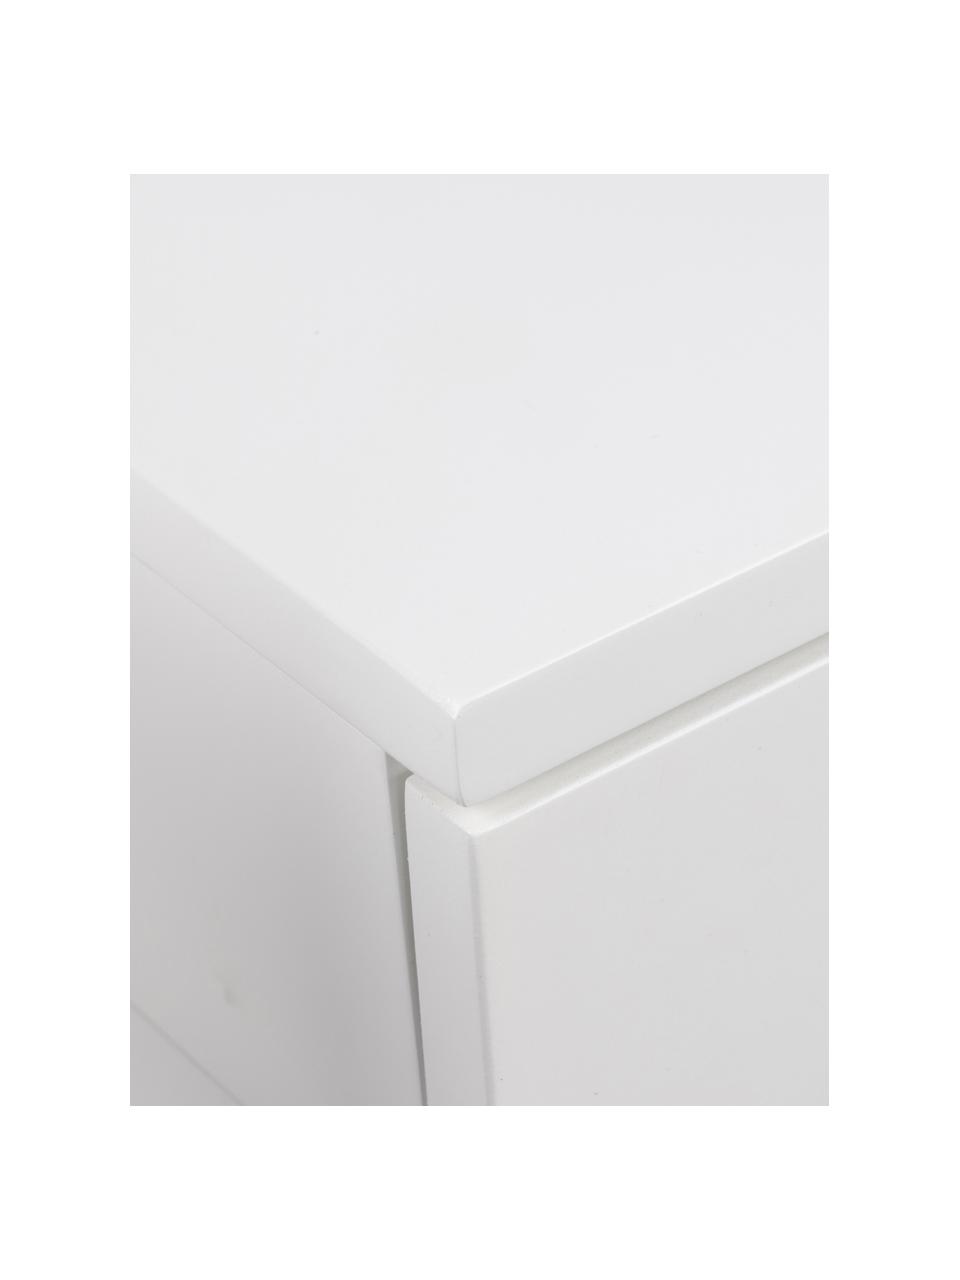 MALM mueble TV, blanco, 160x48 cm - IKEA